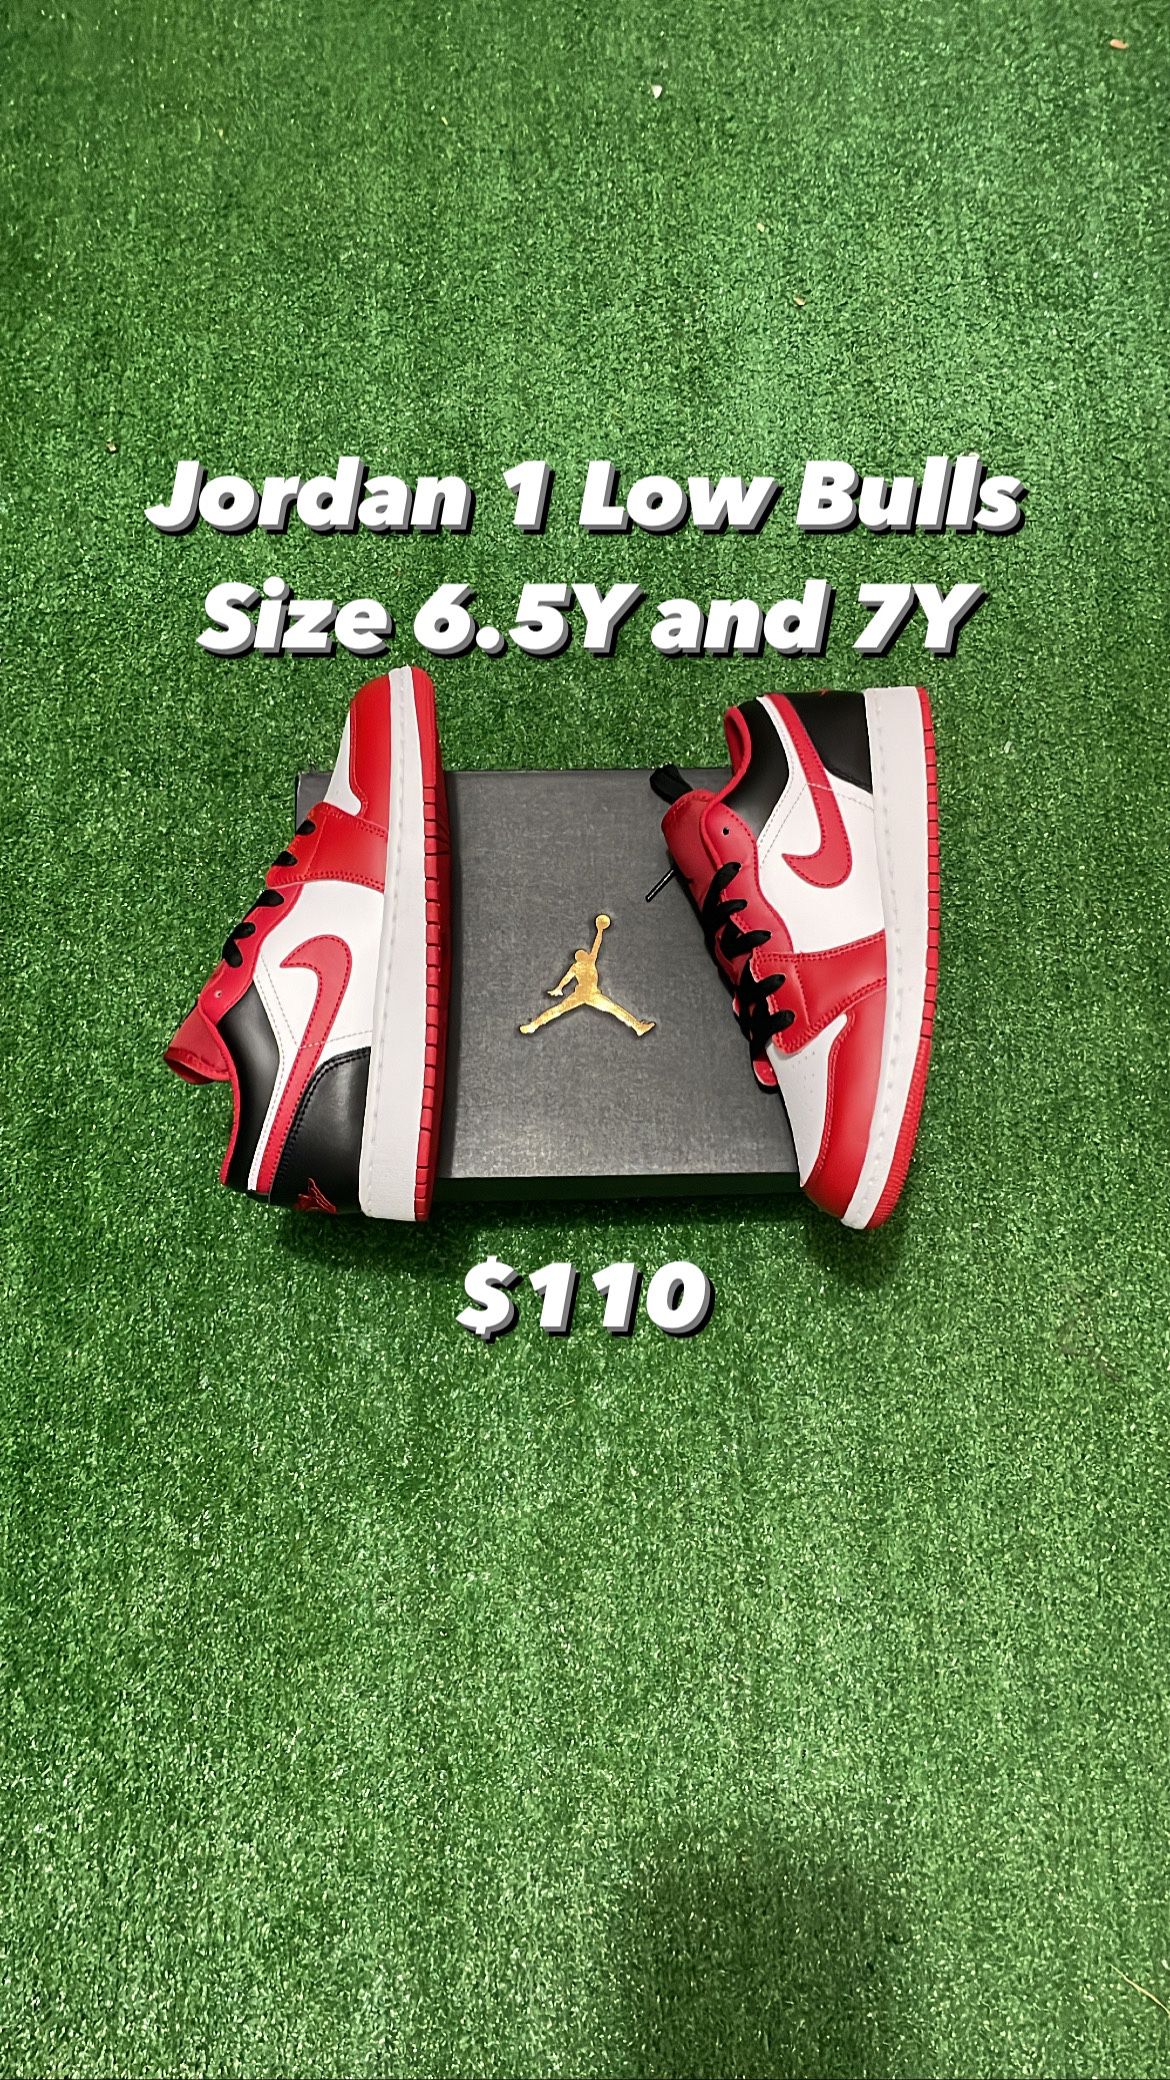 Jordan 1 Low Bulls 